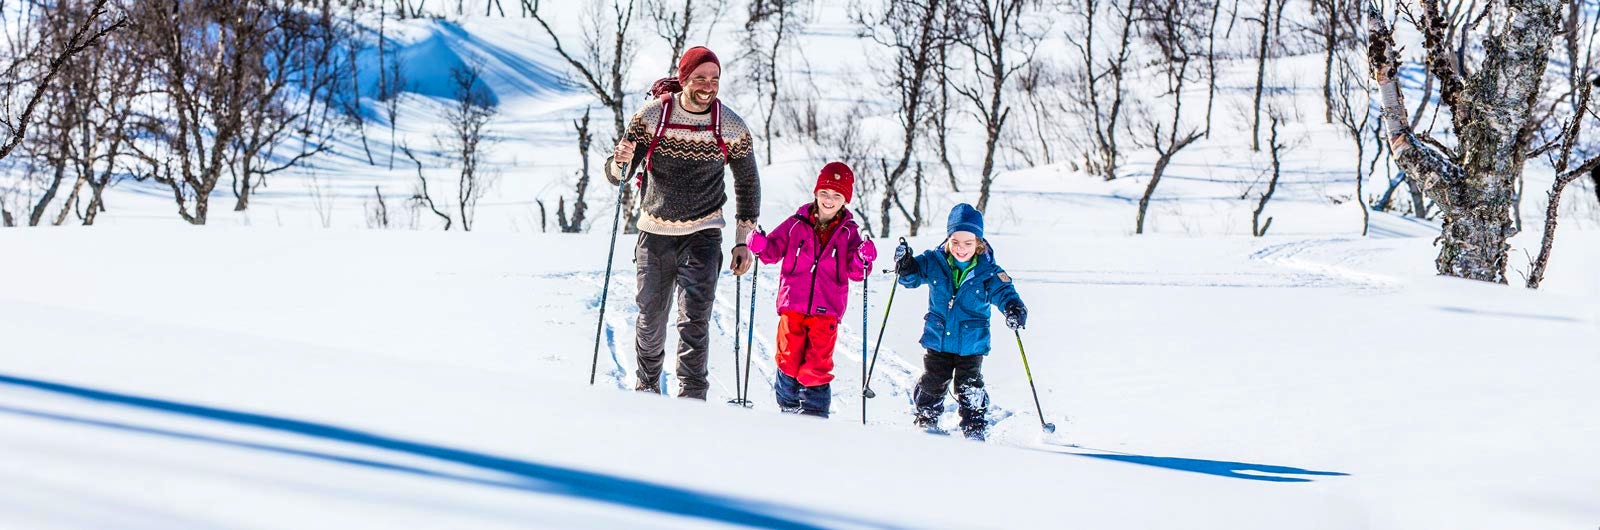 Family of three skiing